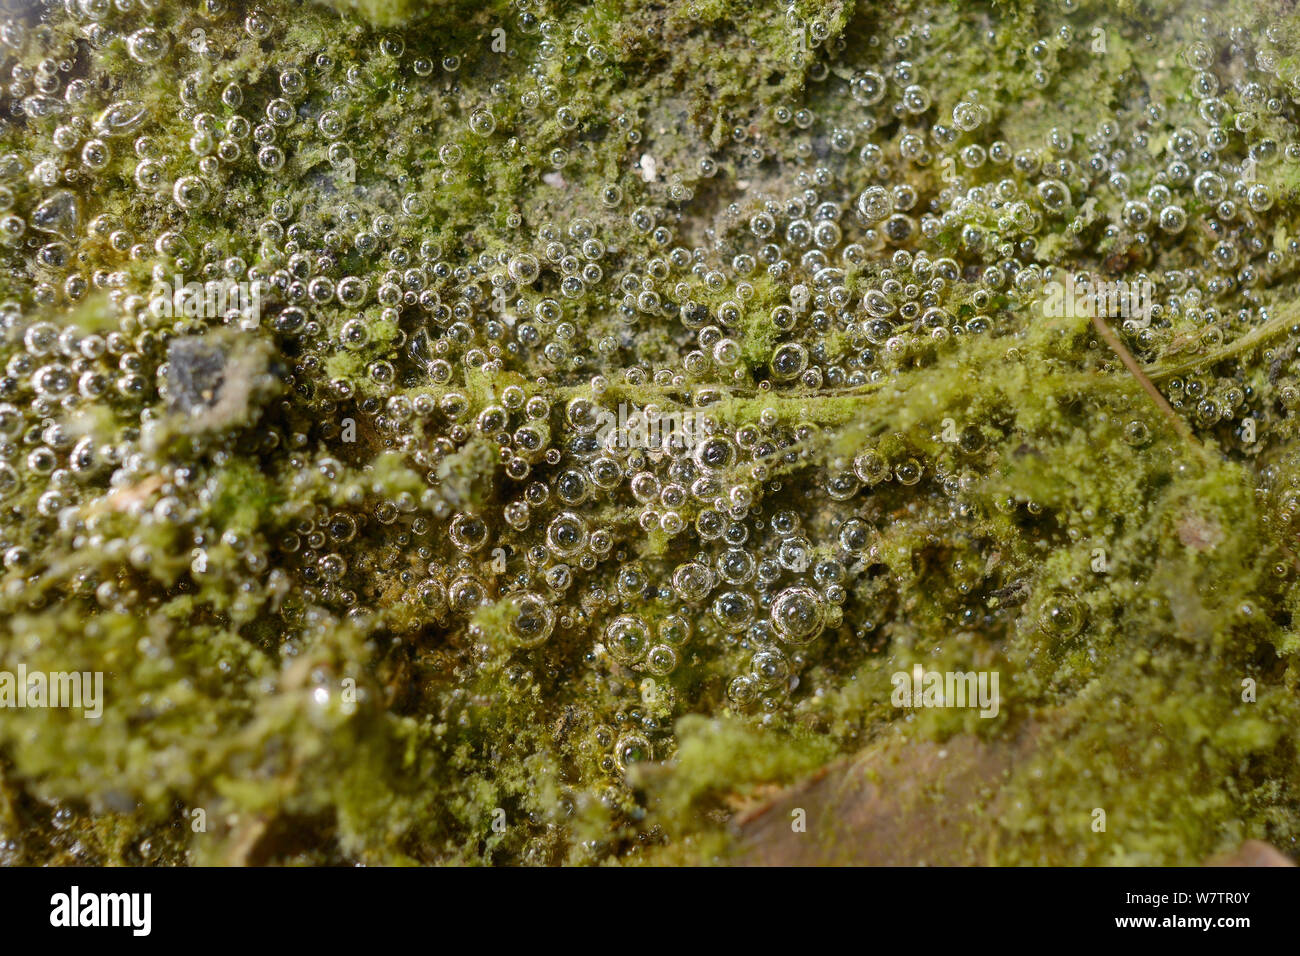 Tappeto di verde acqua dolce fioritura di alghe su un panno draincover, rilasciando delle bolle di ossigeno attraverso la fotosintesi, Wiltshire, Regno Unito, maggio. Foto Stock